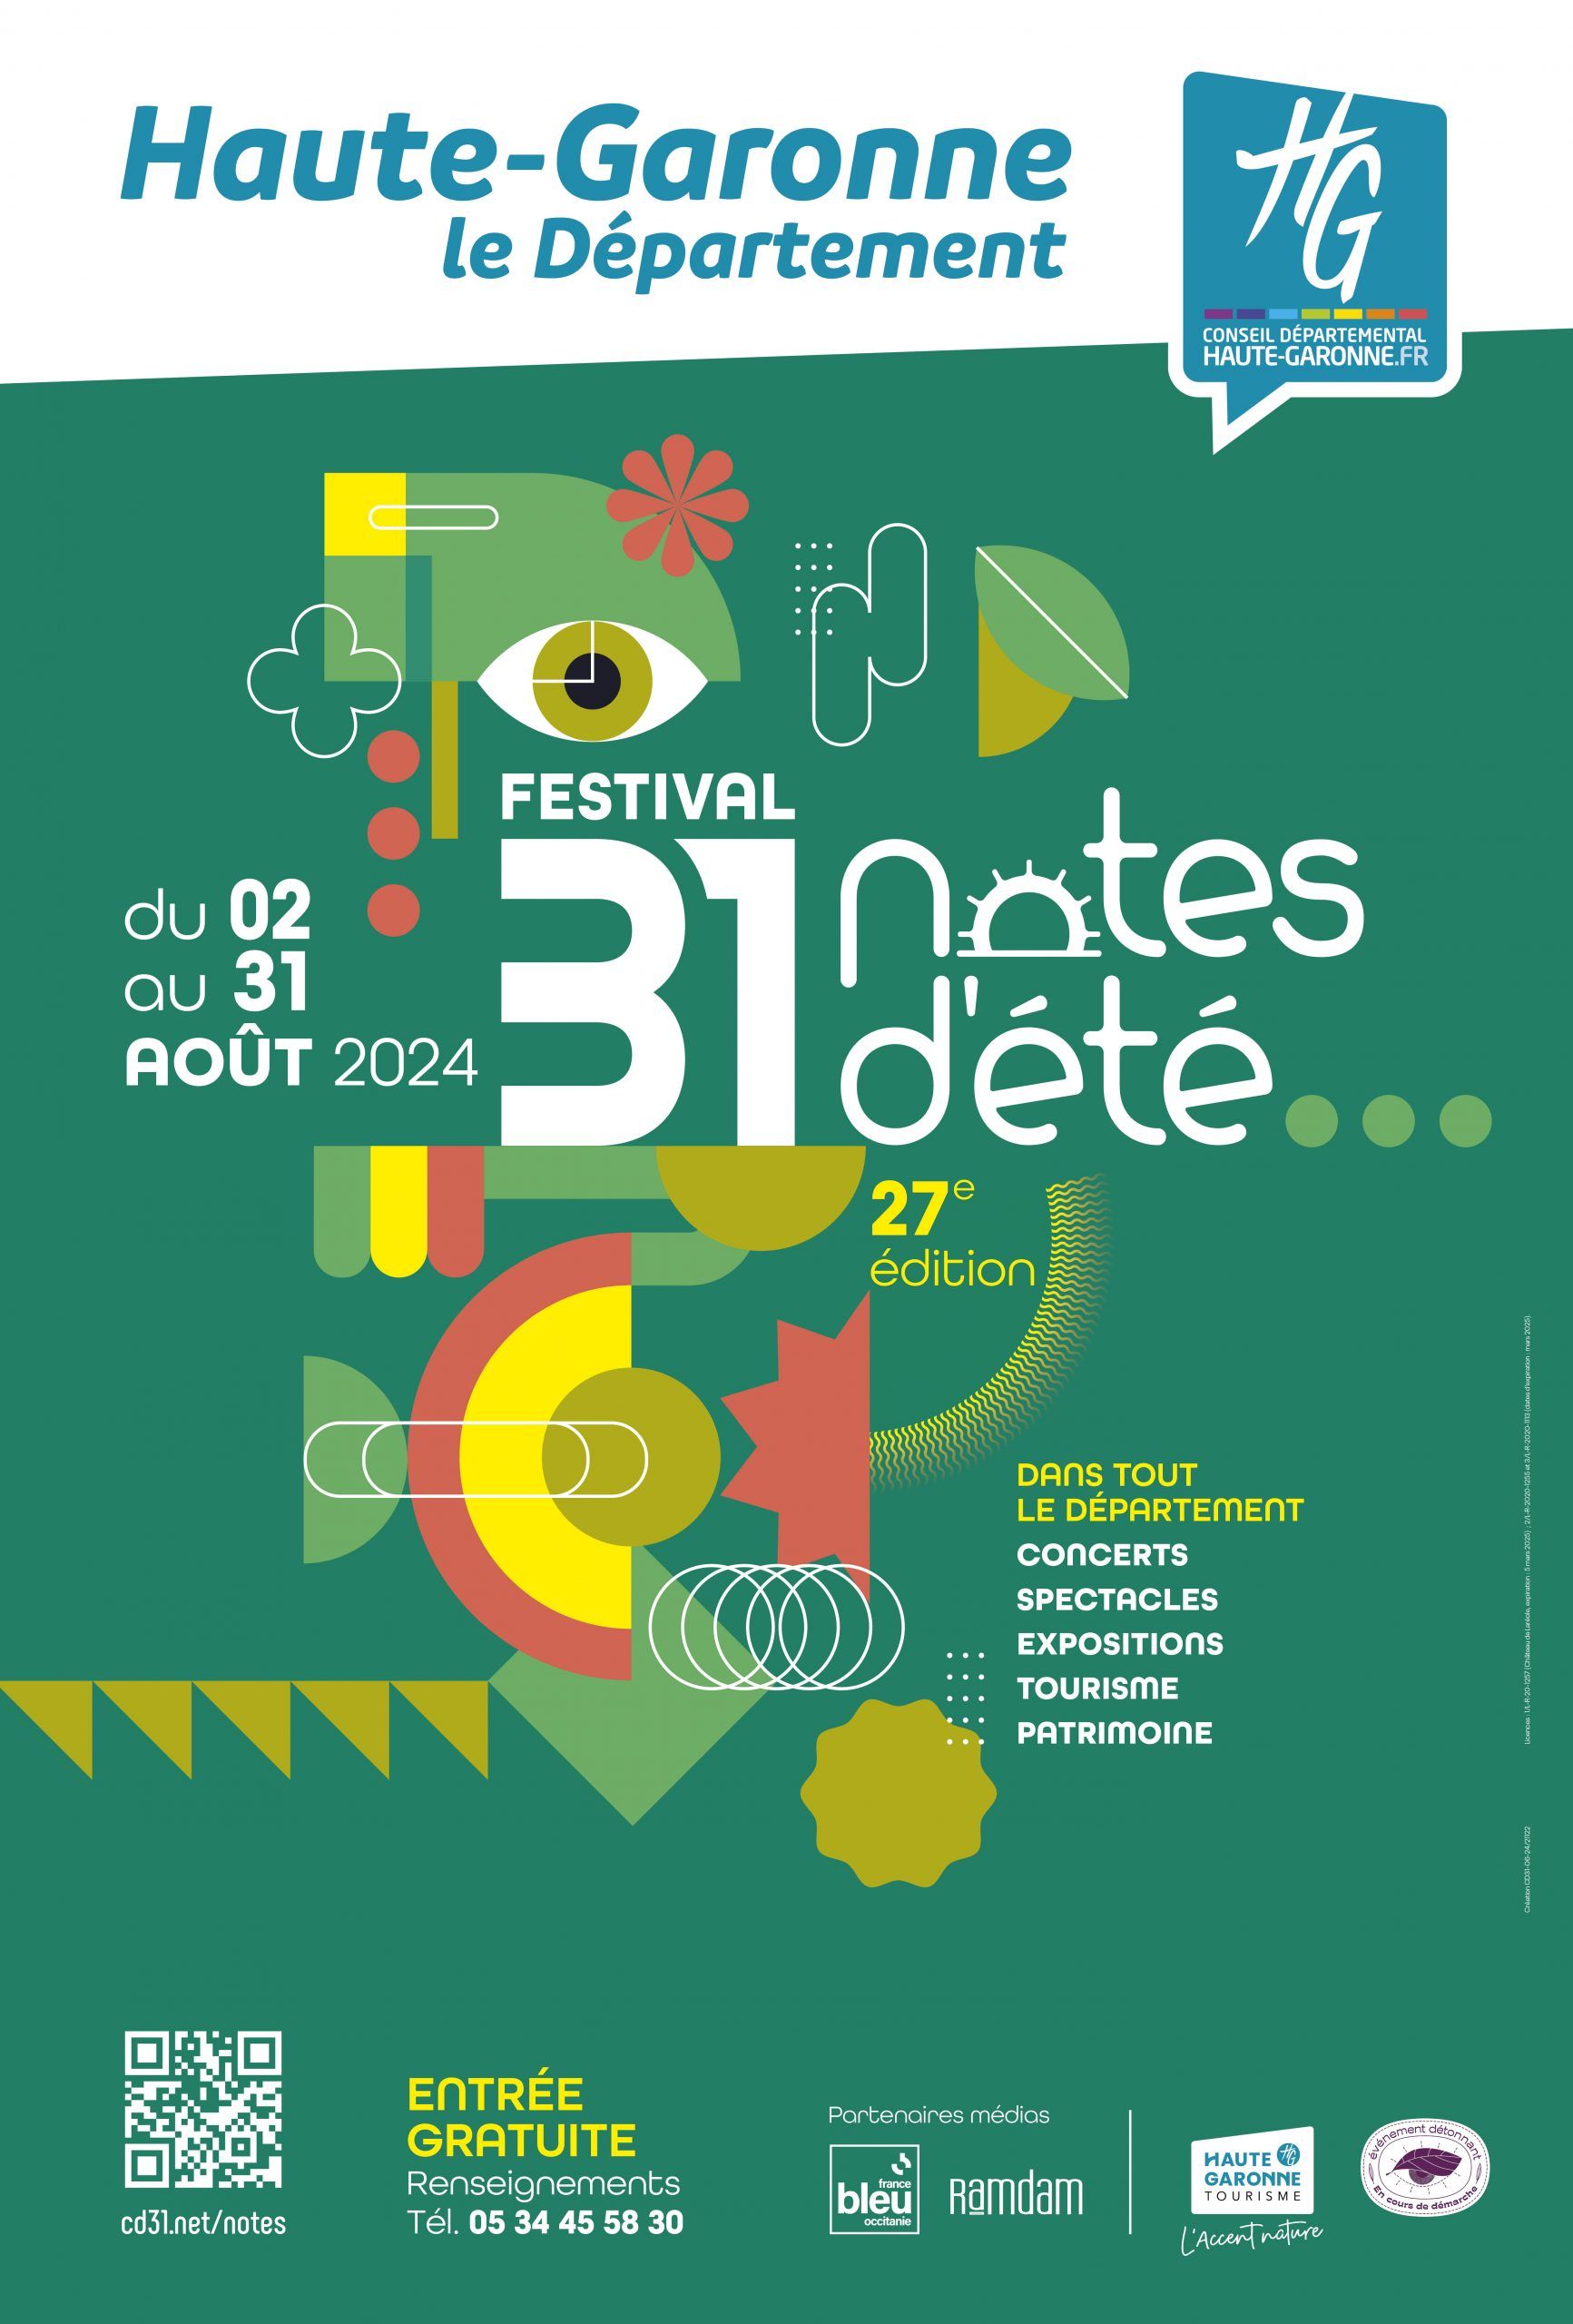 Conseil Départemental de la Haute-Garonne - Festival 31 notes d'été